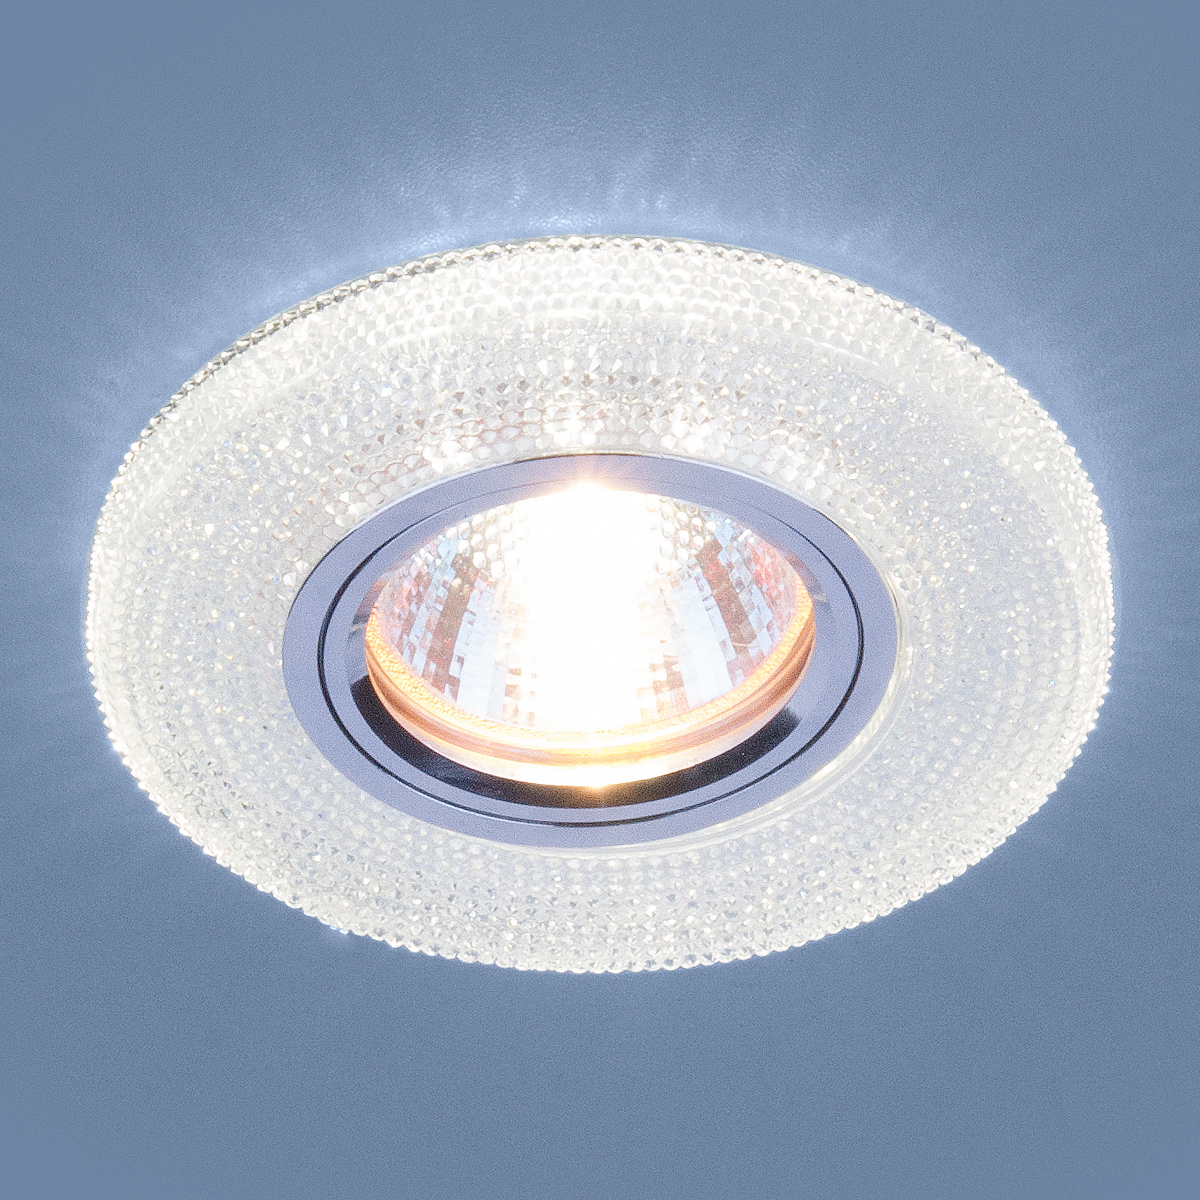 Встраиваемый потолочный светильник со светодиодной подсветкой 2130 MR16 CL прозрачный